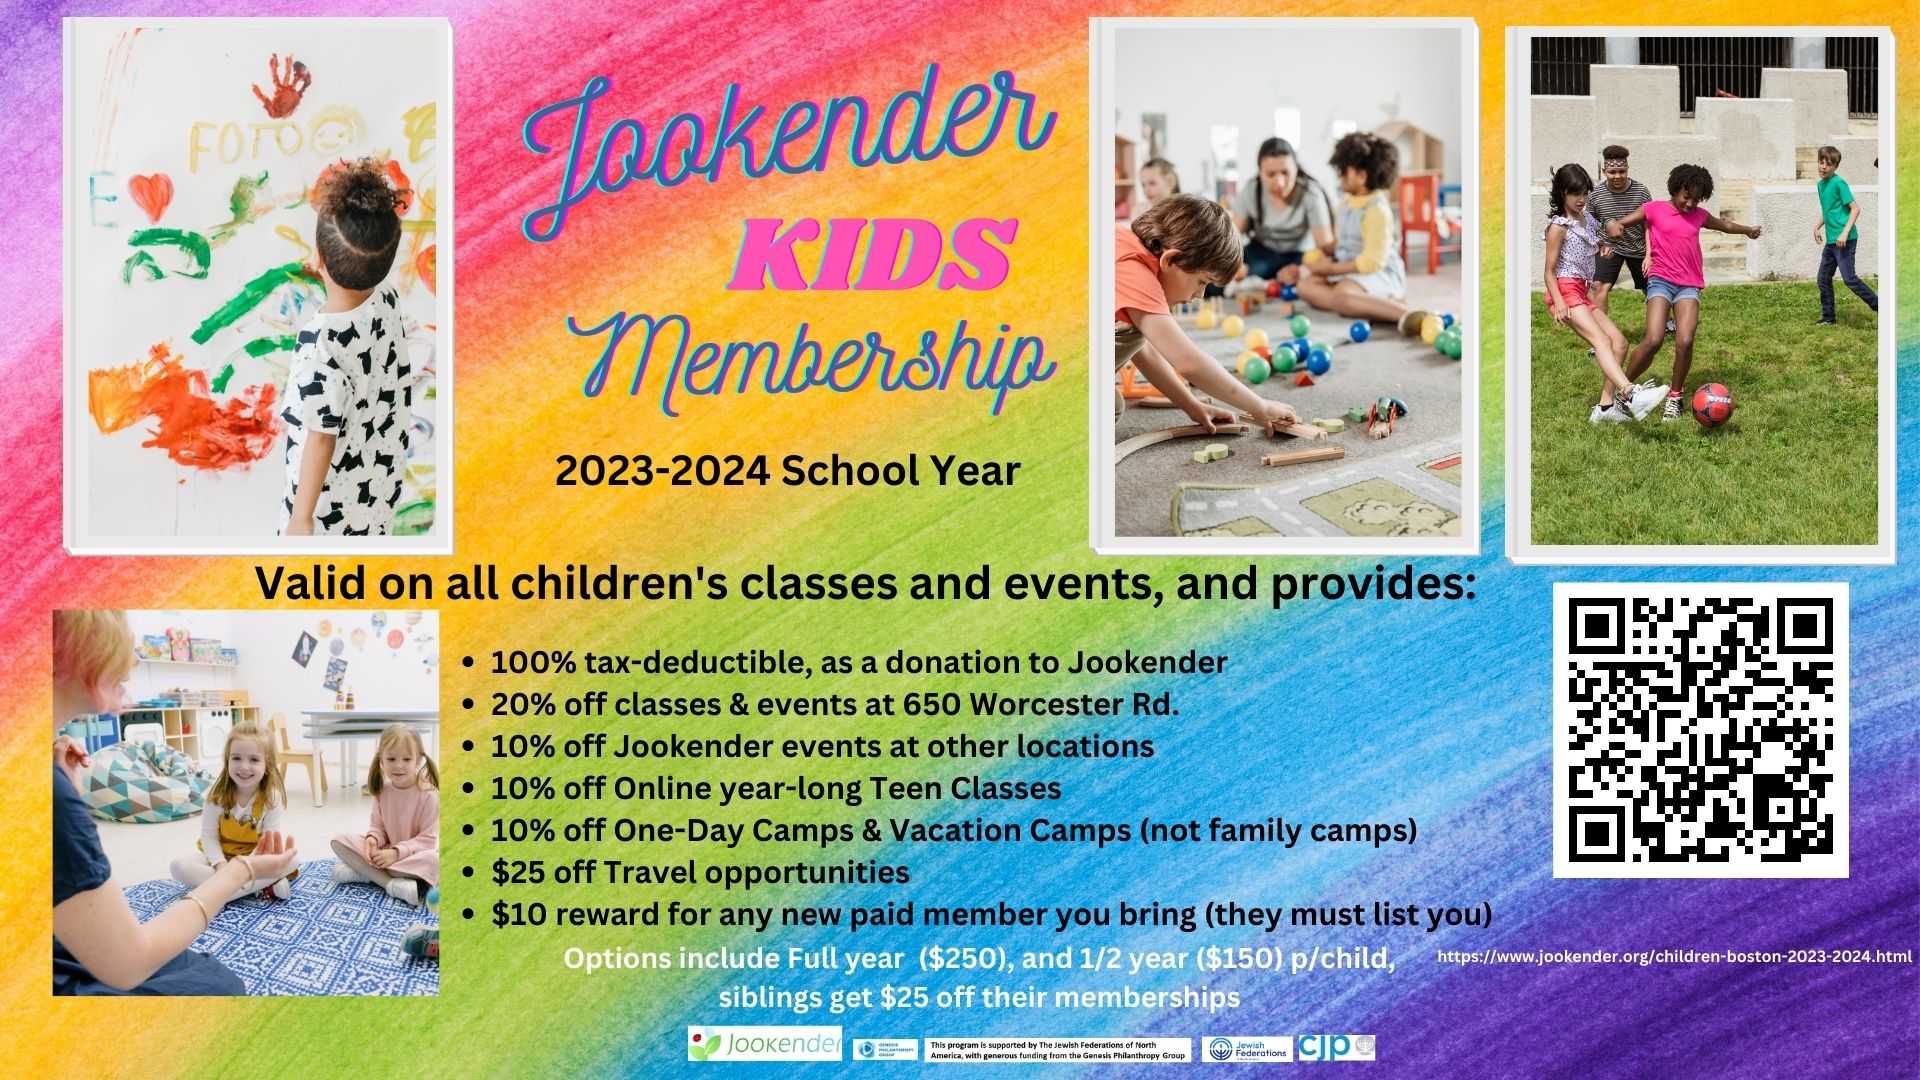 Jookender Kids Membership